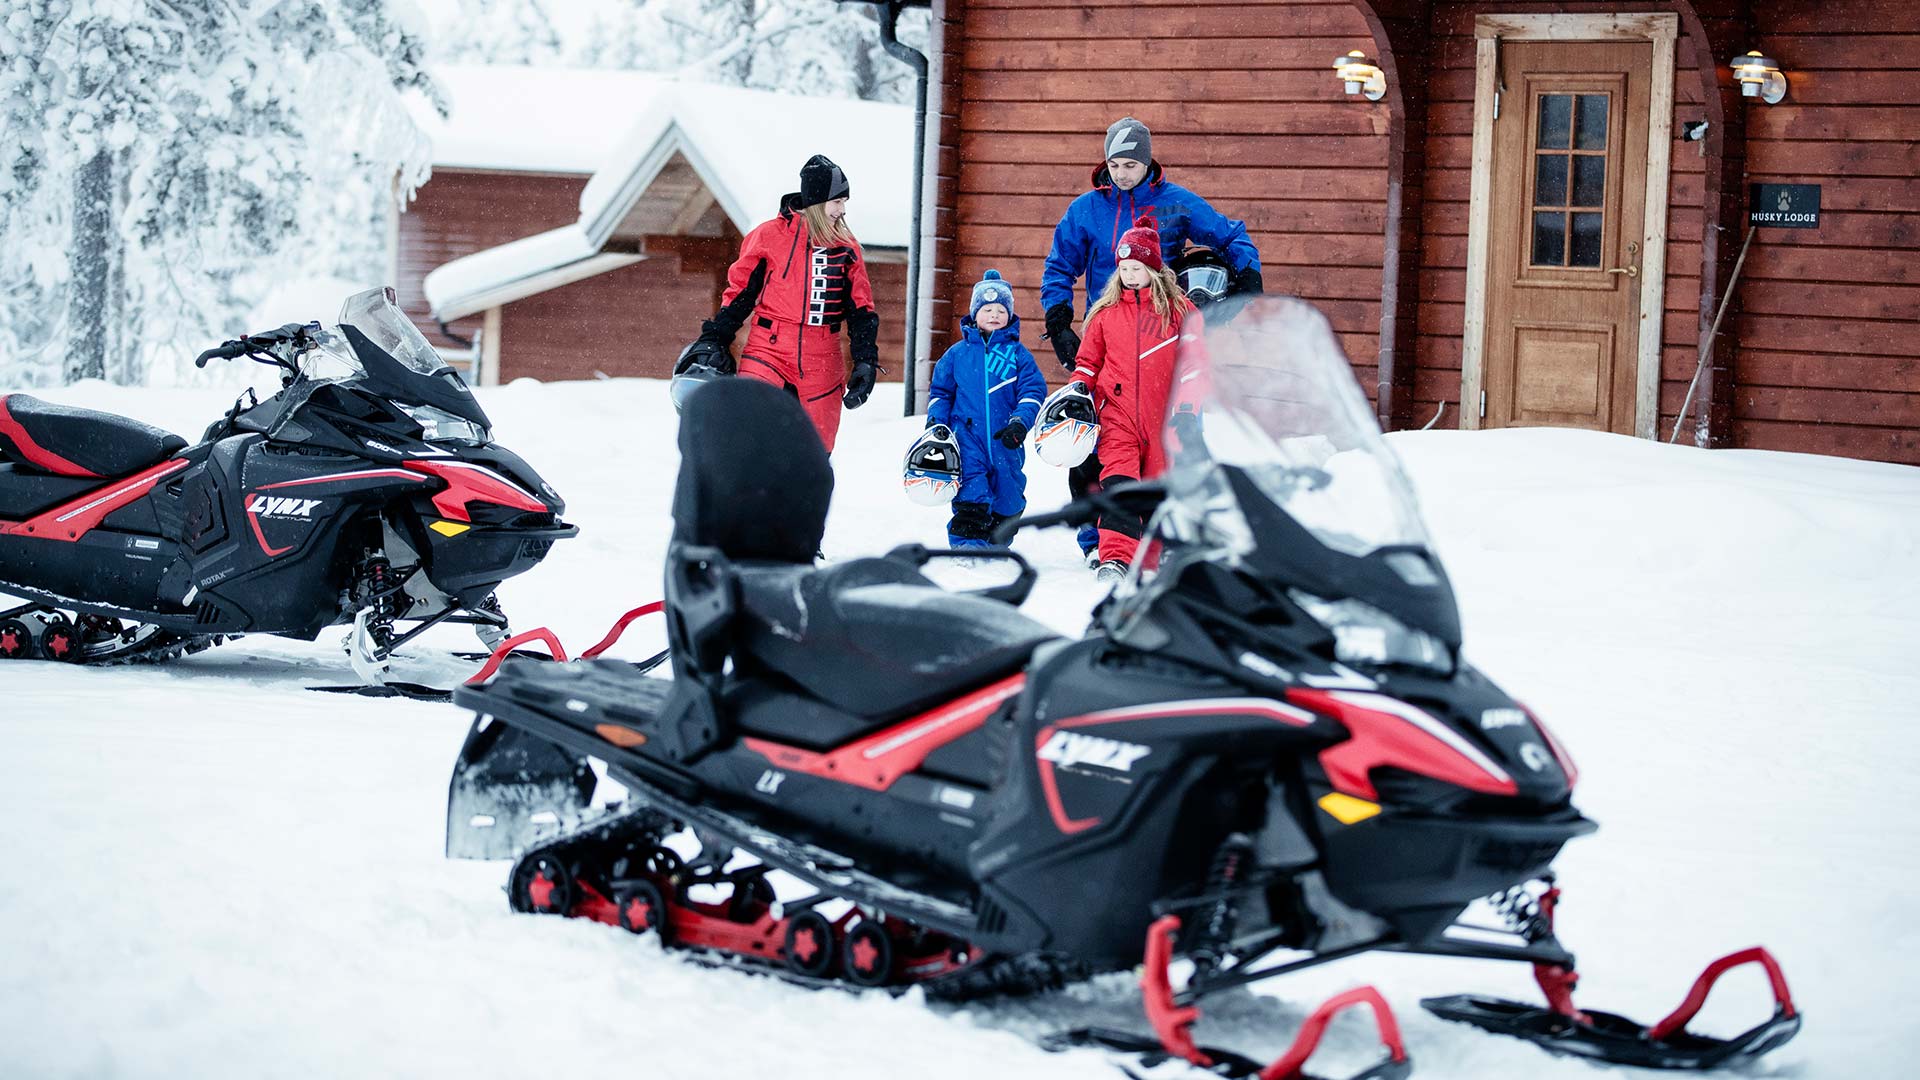 Lynx Adventure kar motosikletleriyle dolaşan aile